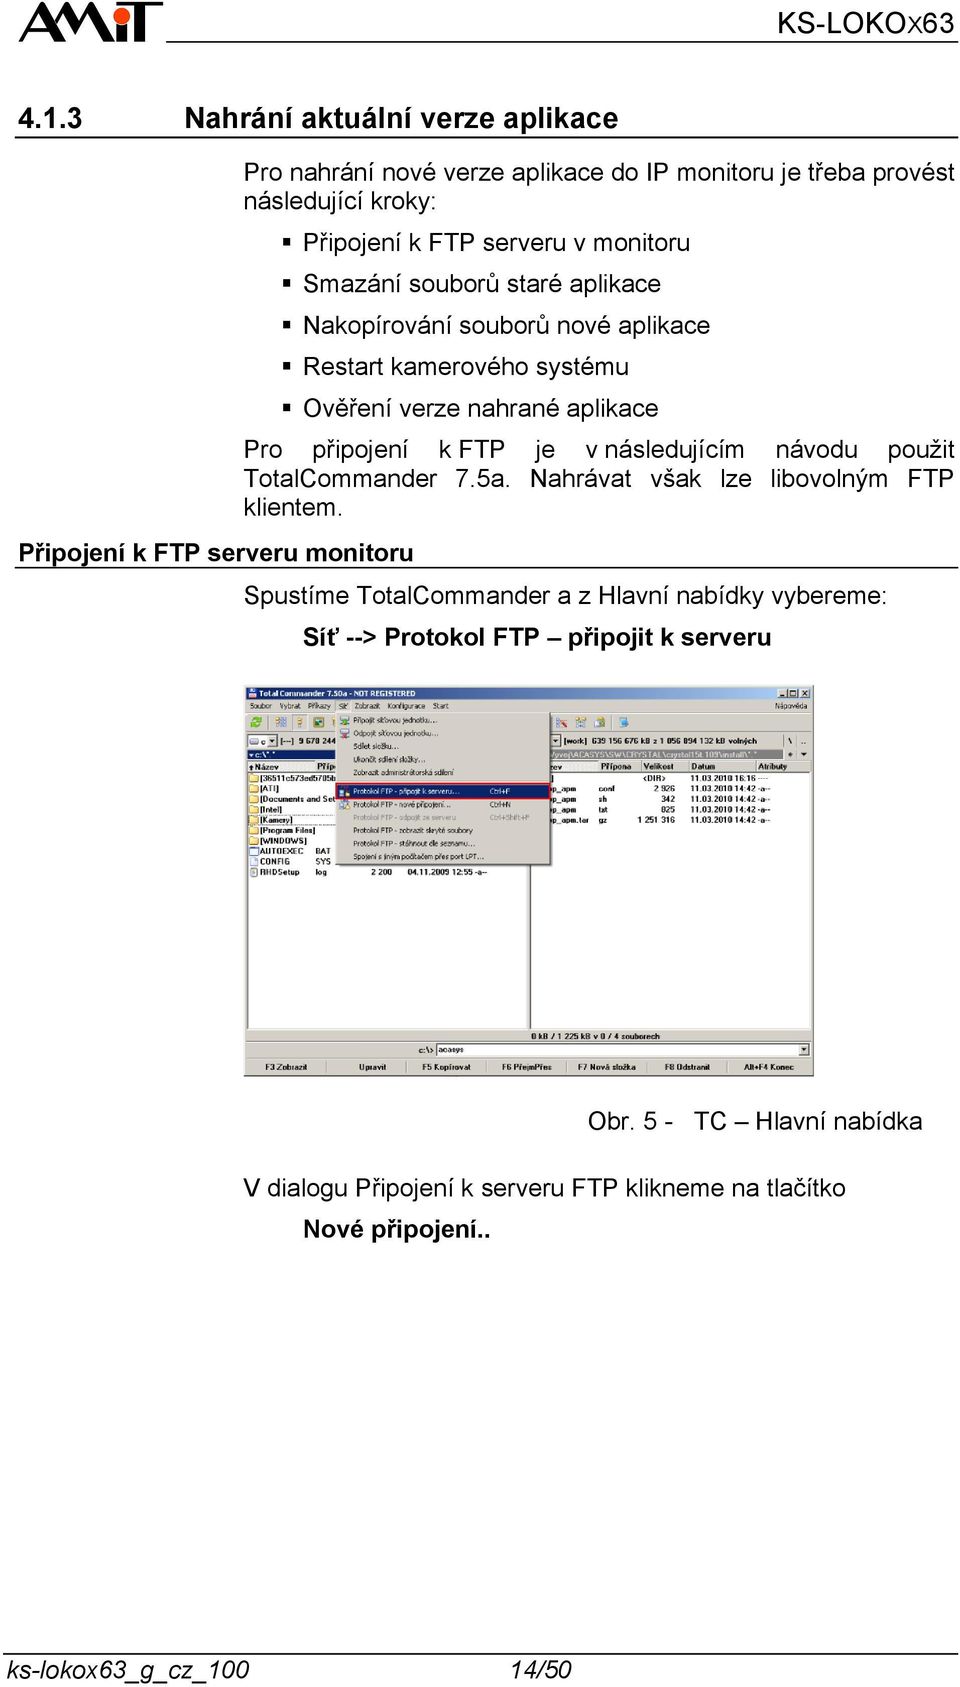 Pro připojení k FTP je v následujícím návodu pouţit TotalCommander 7.5a. Nahrávat však lze libovolným FTP klientem.